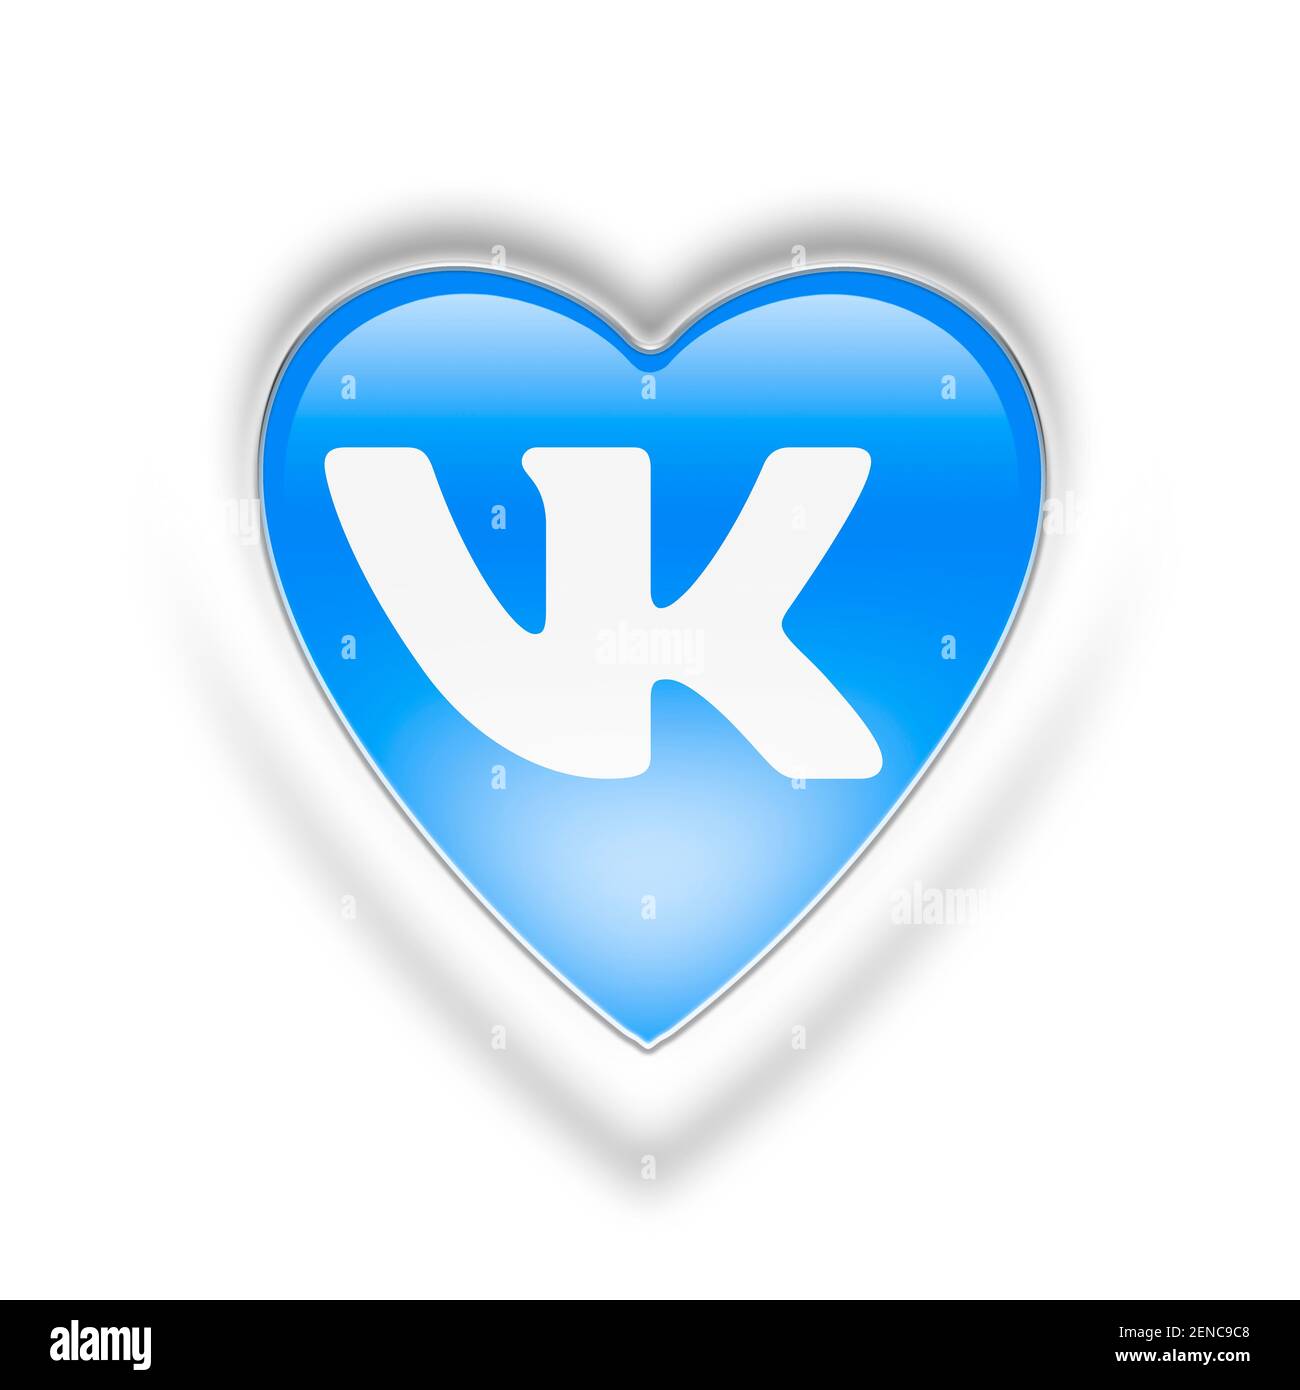 Saiba como criar uma conta no VKontakte, o VK